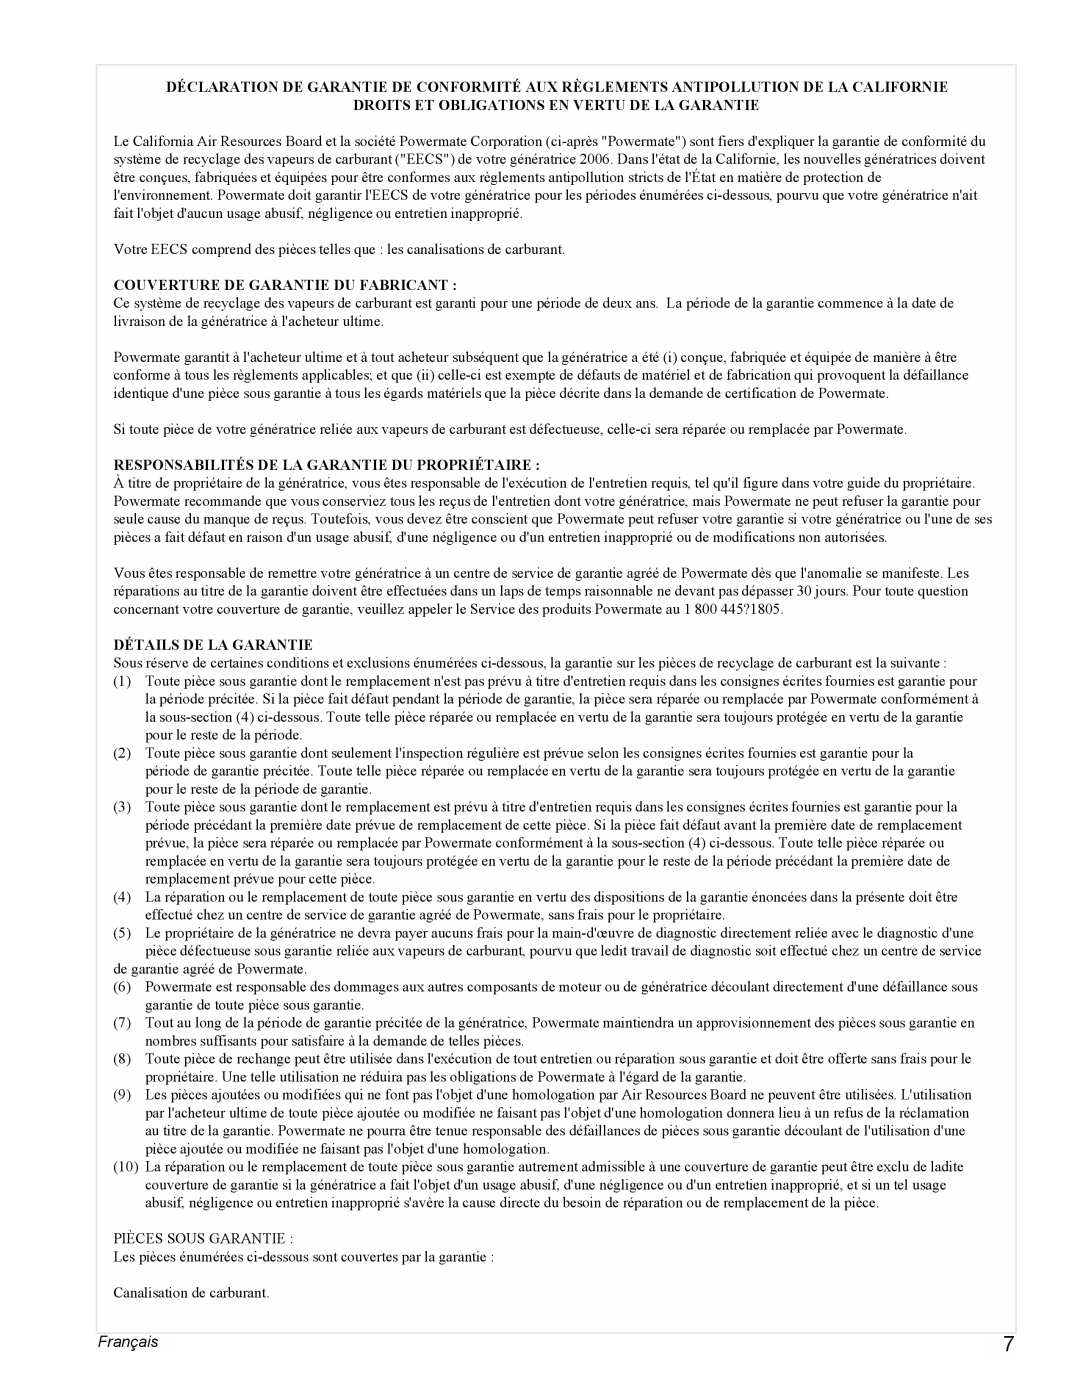 Powermate PMC497000 manual Français, Droits Et Obligations En Vertu De La Garantie, Couverture De Garantie Du Fabricant 